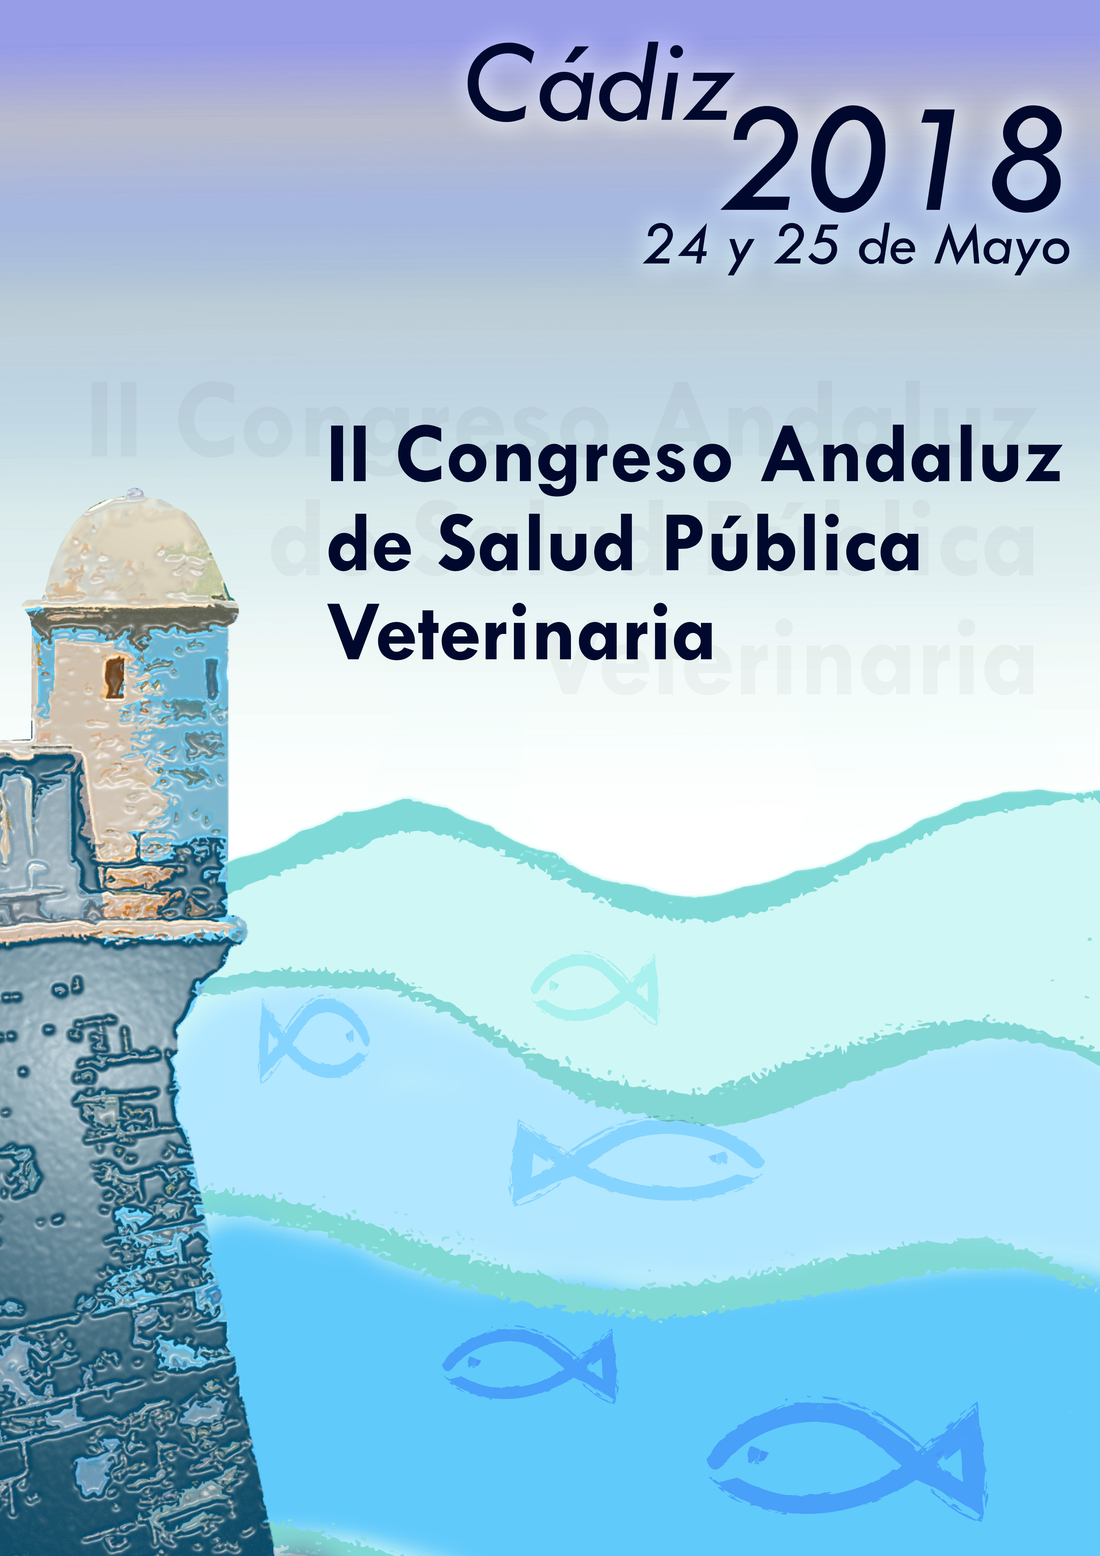 El atún, protagonista del II Congreso de Salud Pública Veterinaria que se celebrará en Cádiz el 23 y 24 de mayo